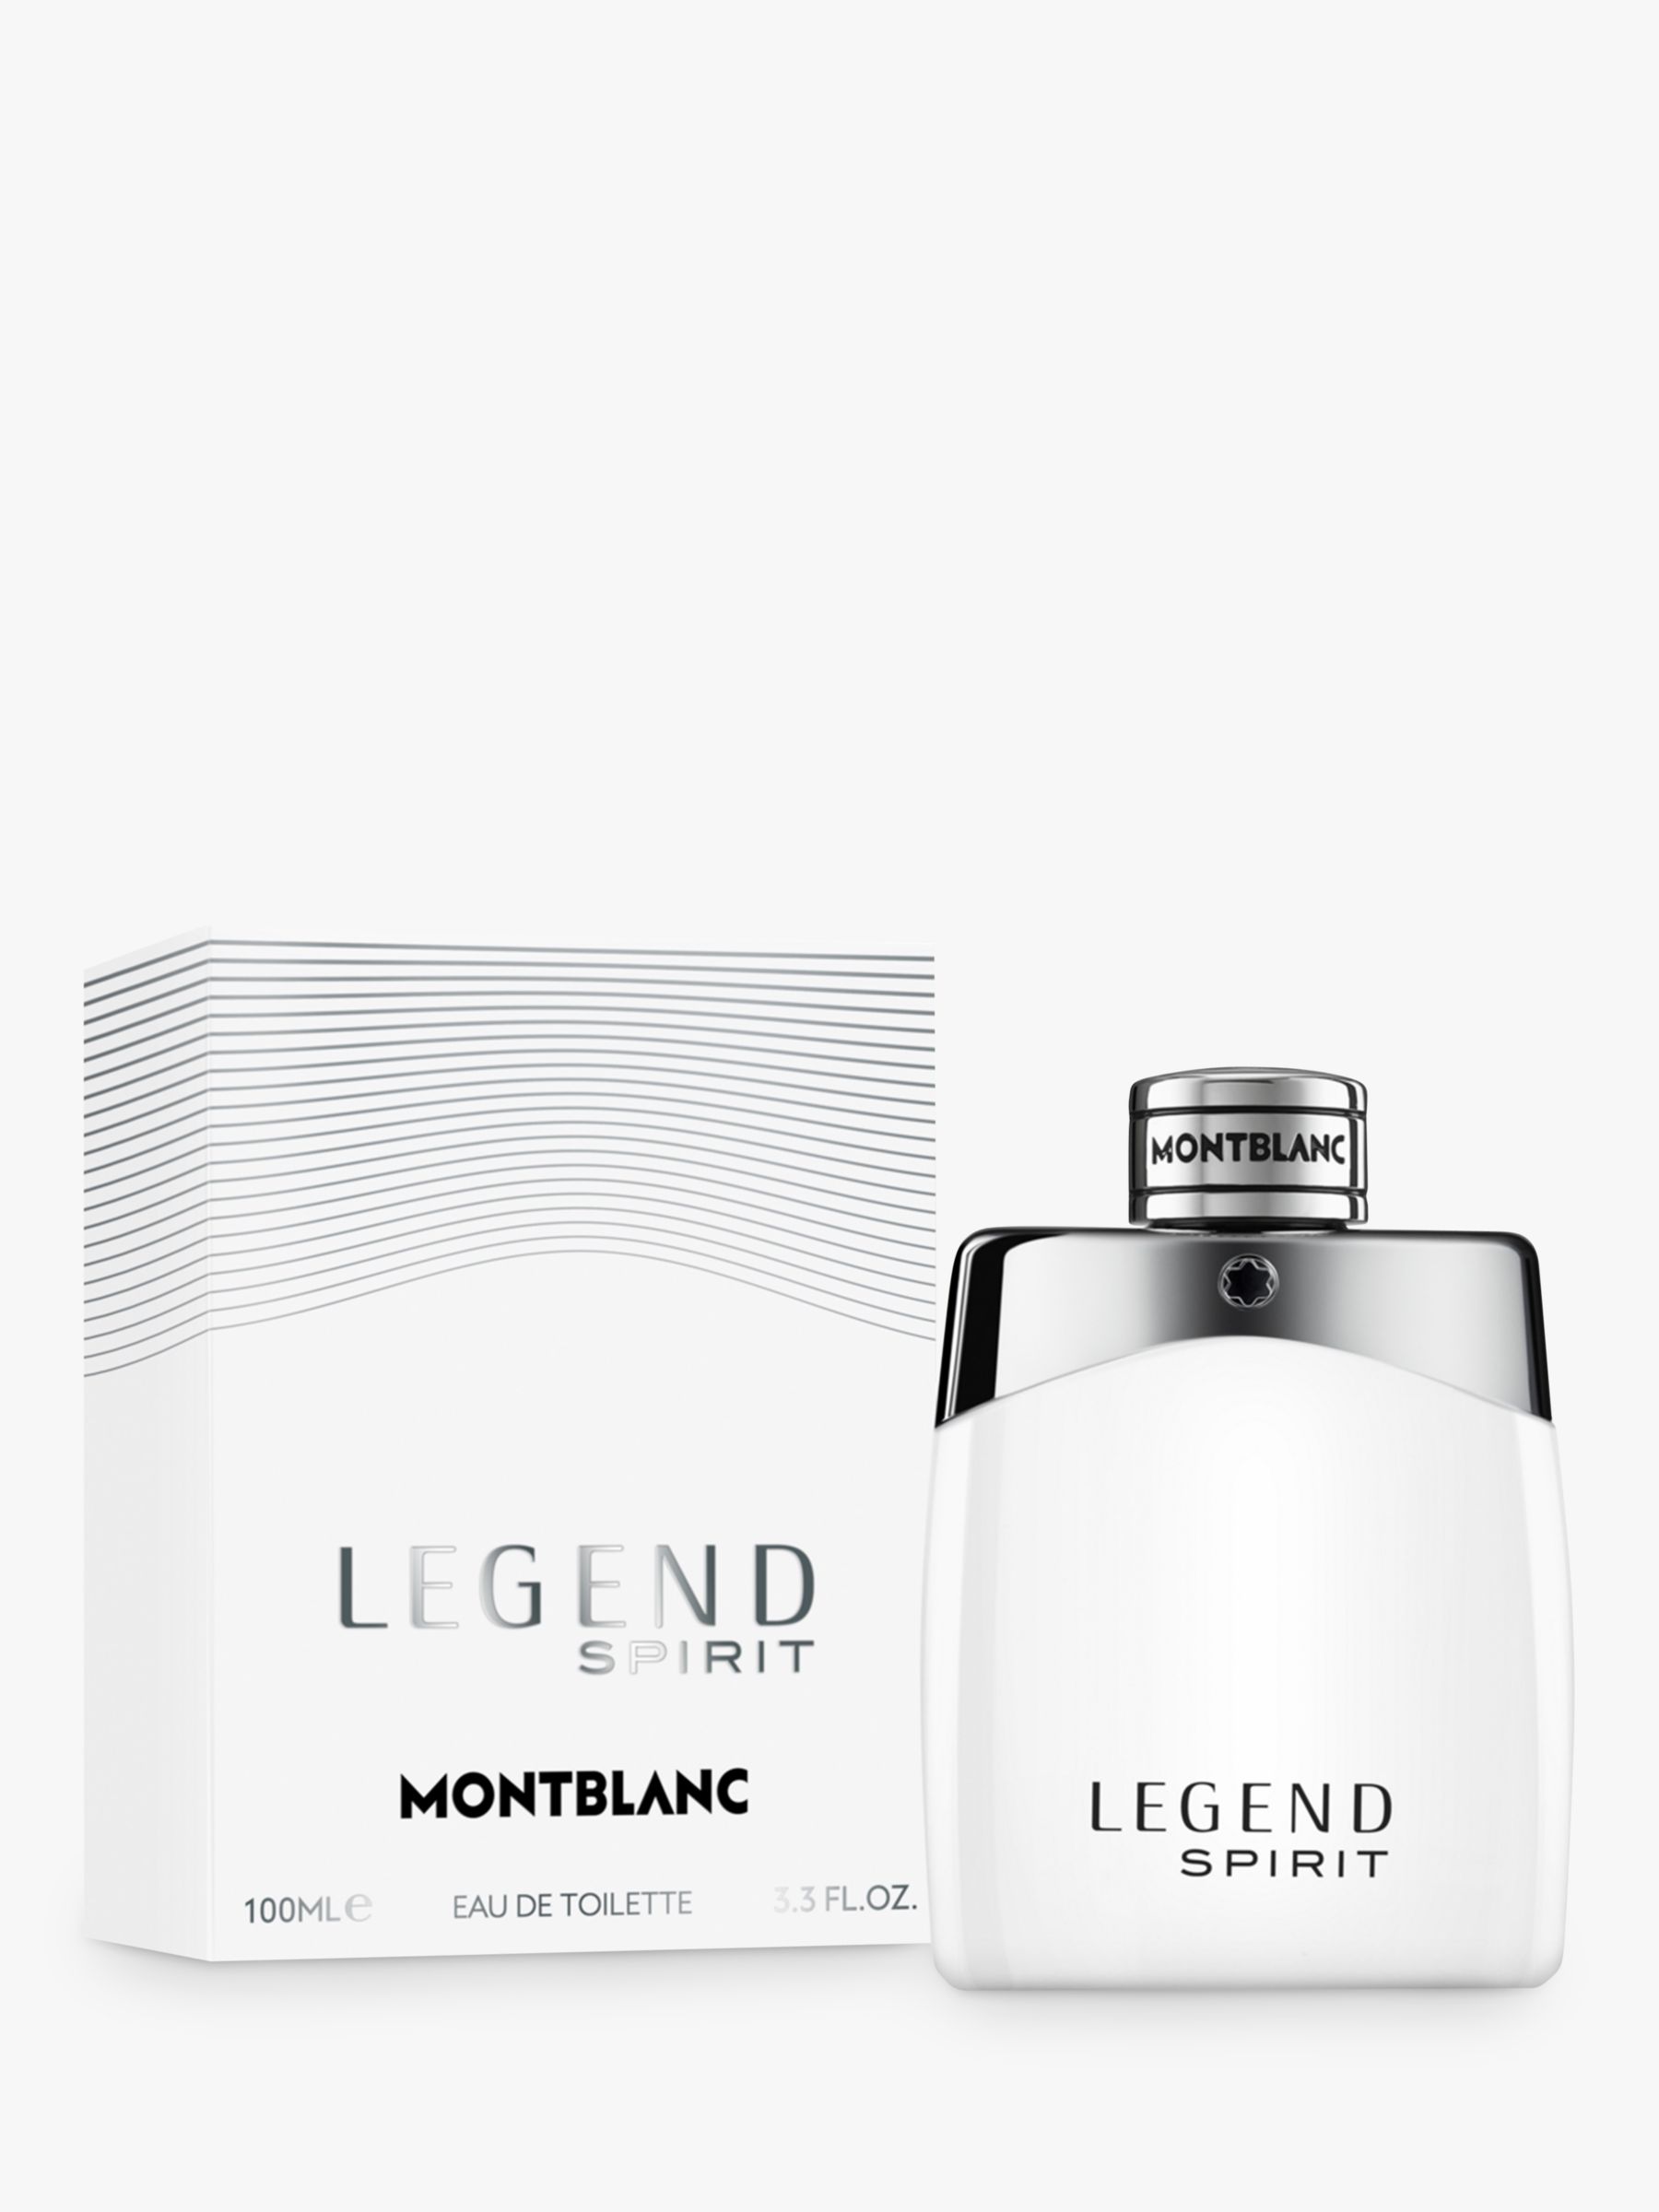 Montblanc Legend Spirit Eau de Toilette, 50ml at John Lewis & Partners